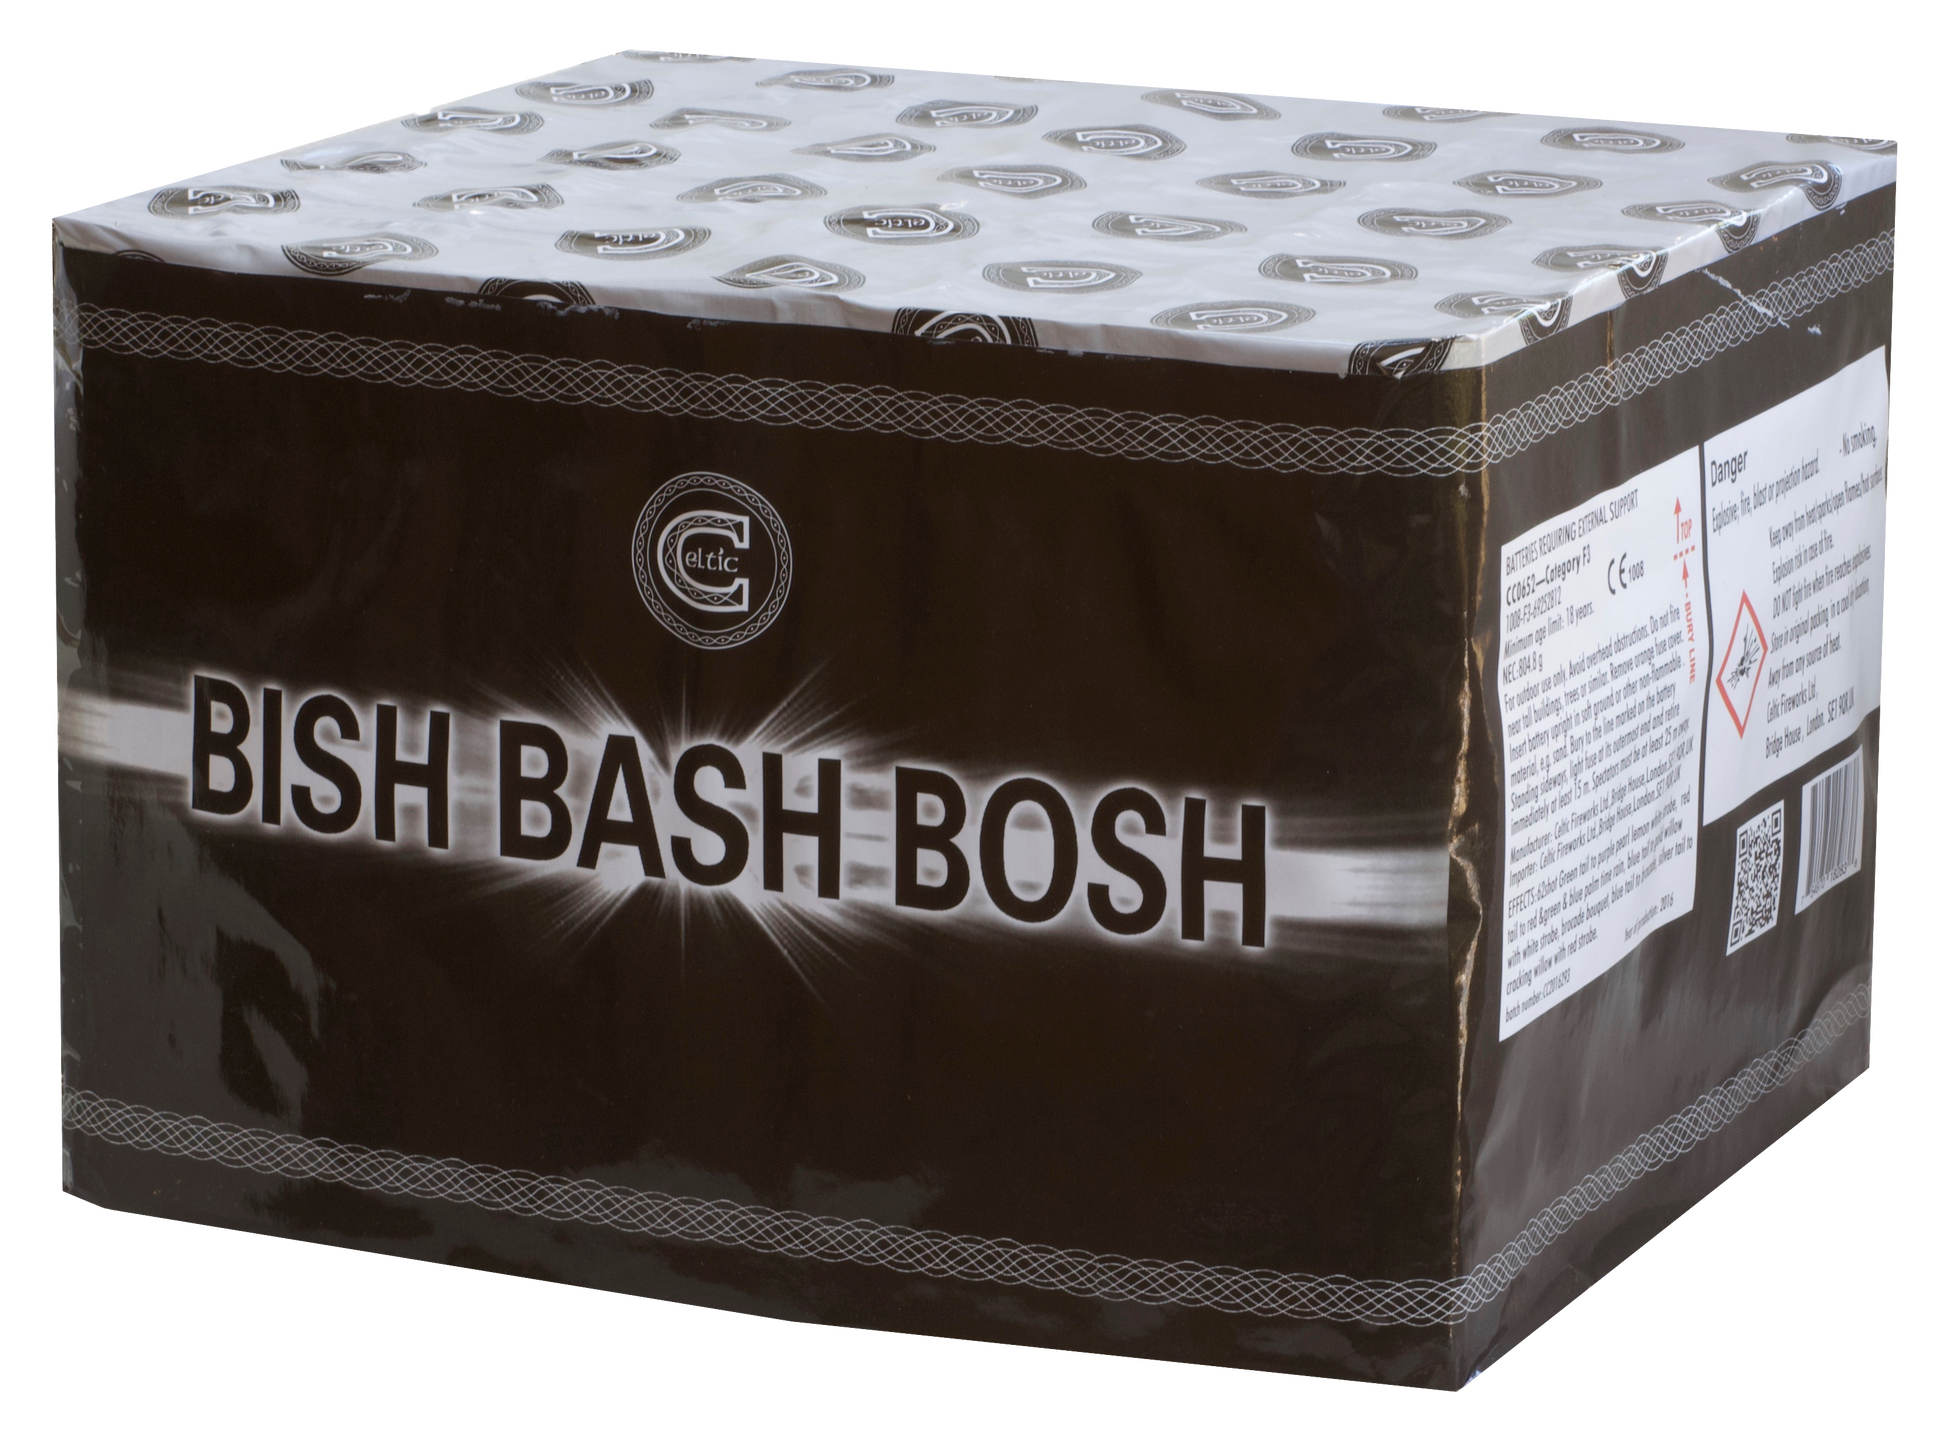 Bish Bash Bosh by Celtic Fireworks